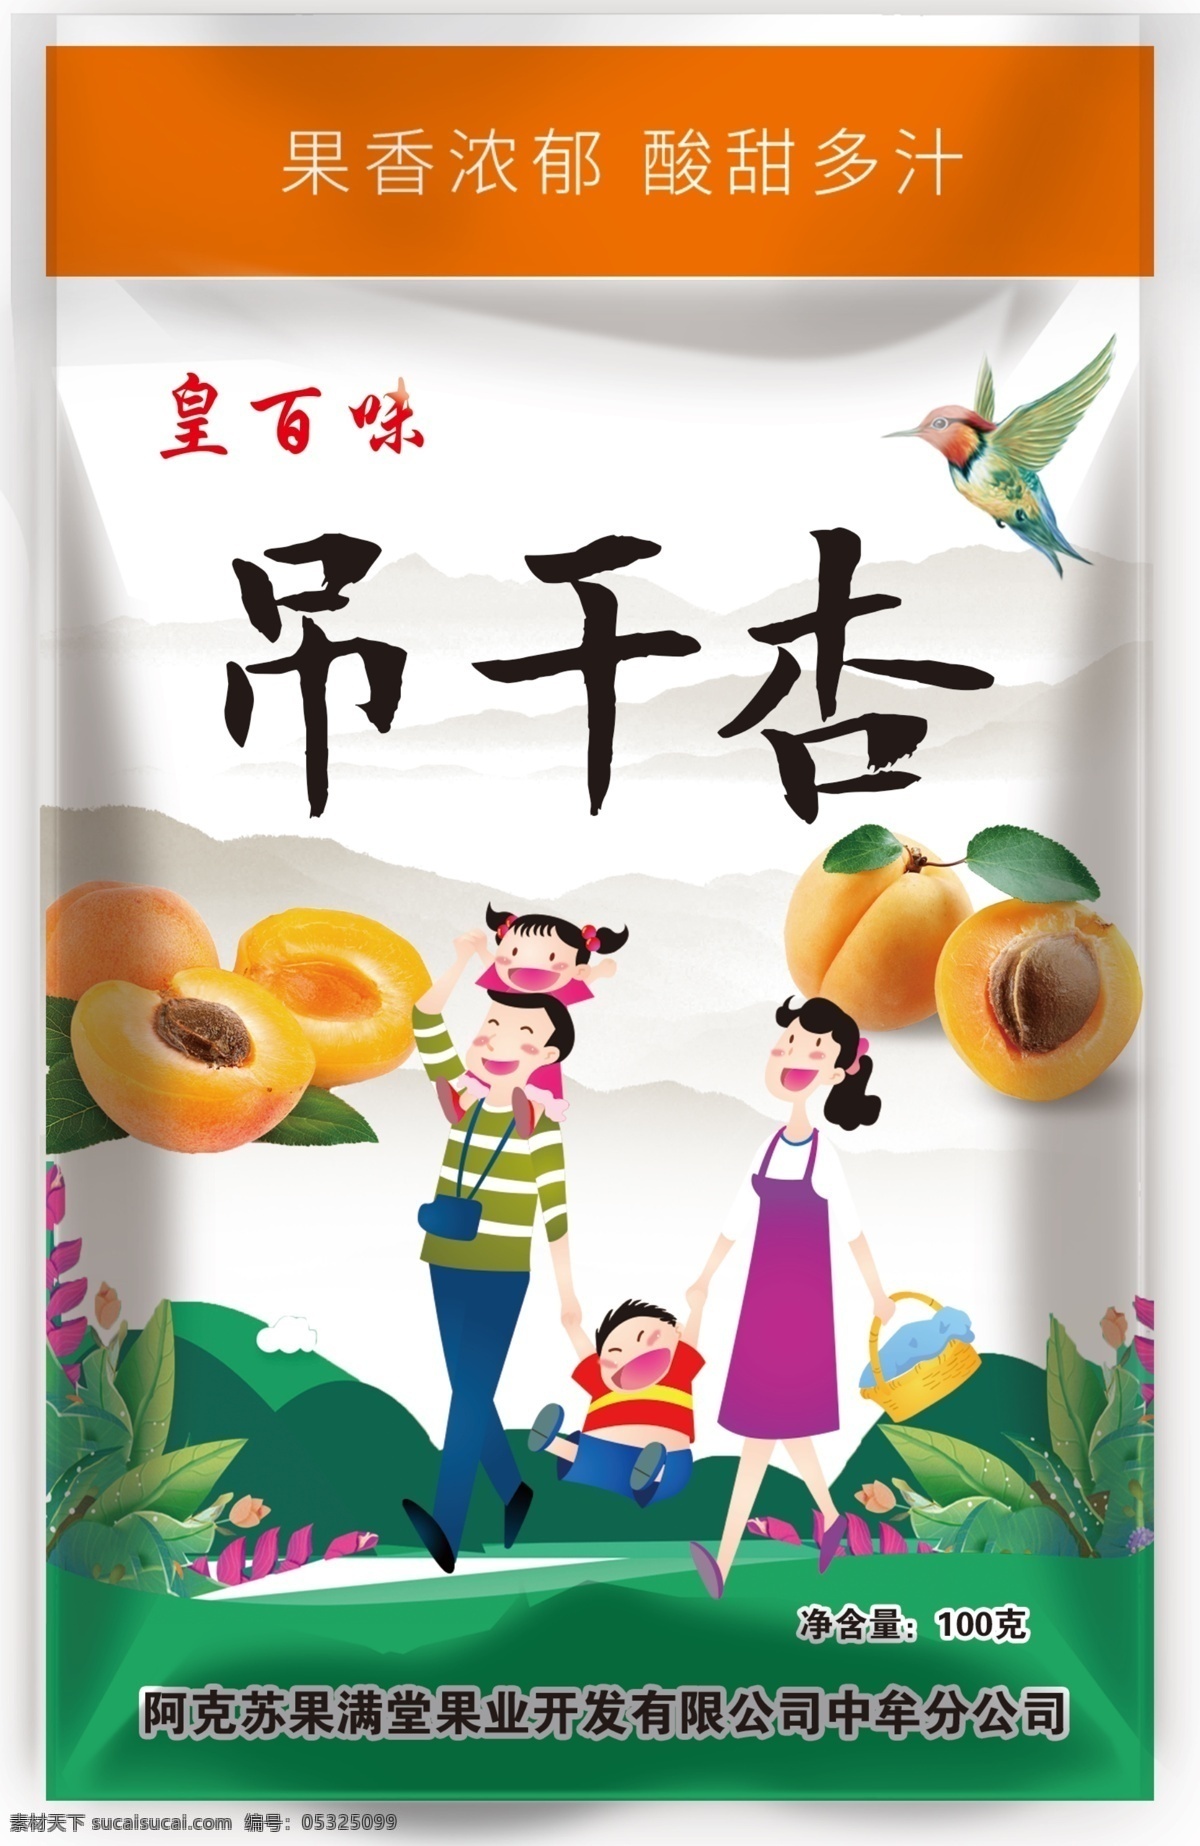 吊干杏 杏 杏肉 卡通 一家人 食品包装 杏干 鸟 食用类 包装设计